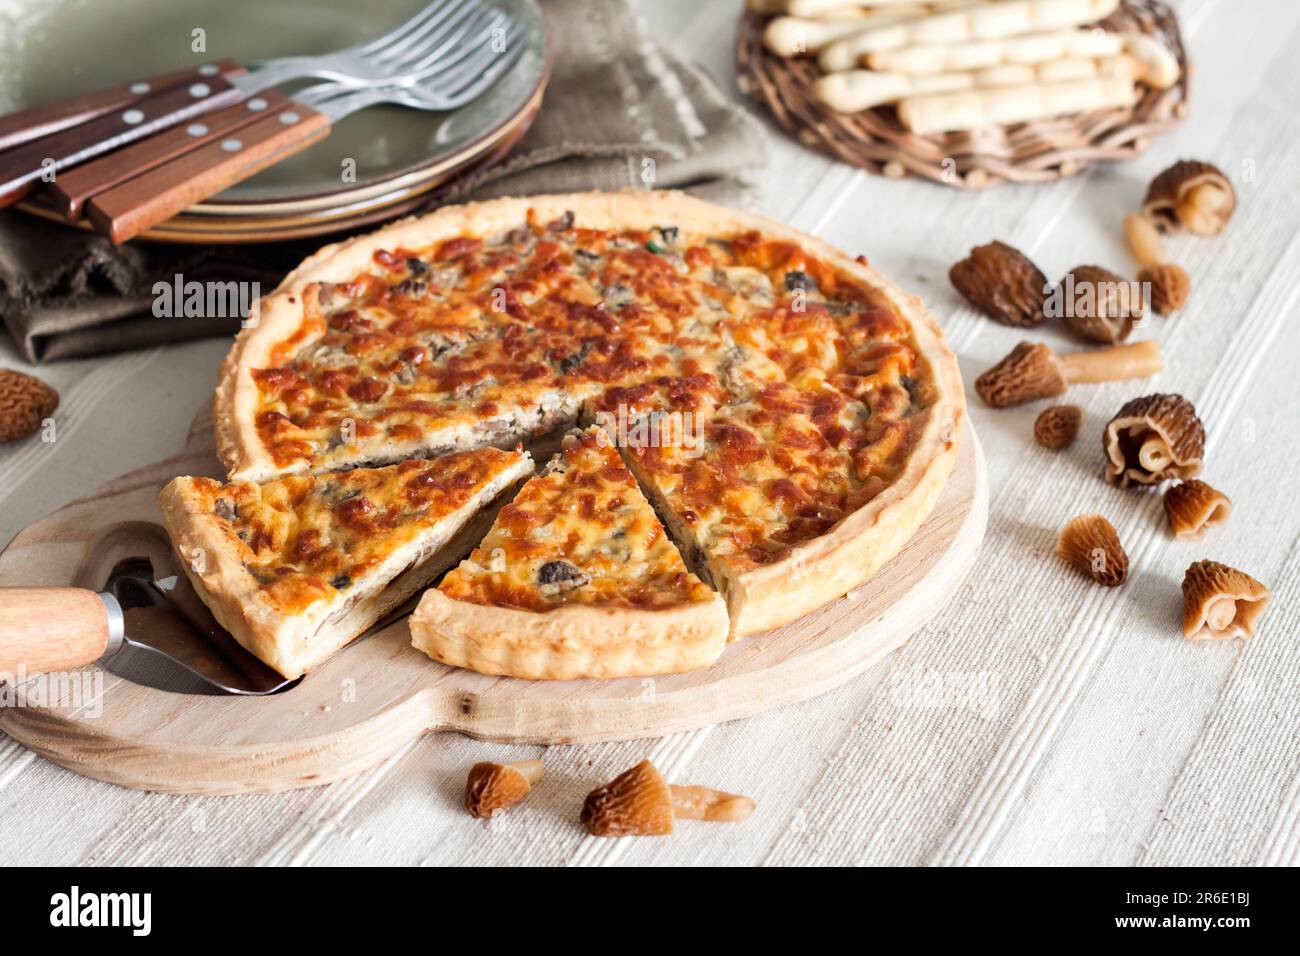 Quiche - tarte ouverte aux morilles, oignons et mozzarella sur planche à découper en bois Banque D'Images